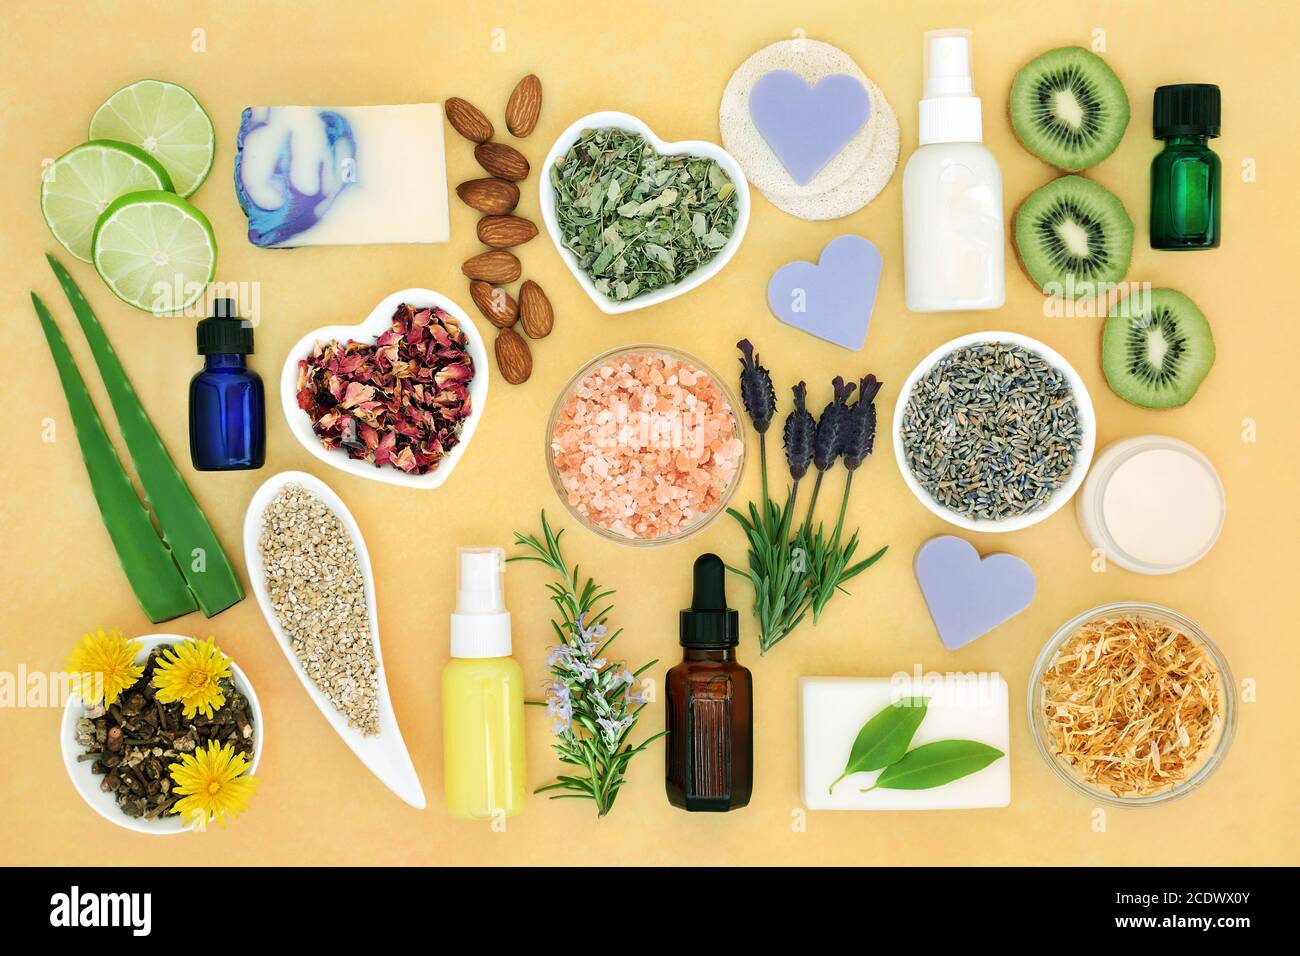 Produits naturels de soin de la peau pour le traitement des maux de peau, y compris les coups de soleil, l'acné, le psoriasis, l'eczéma et les aidspour réduire les dommages environnementaux Banque D'Images